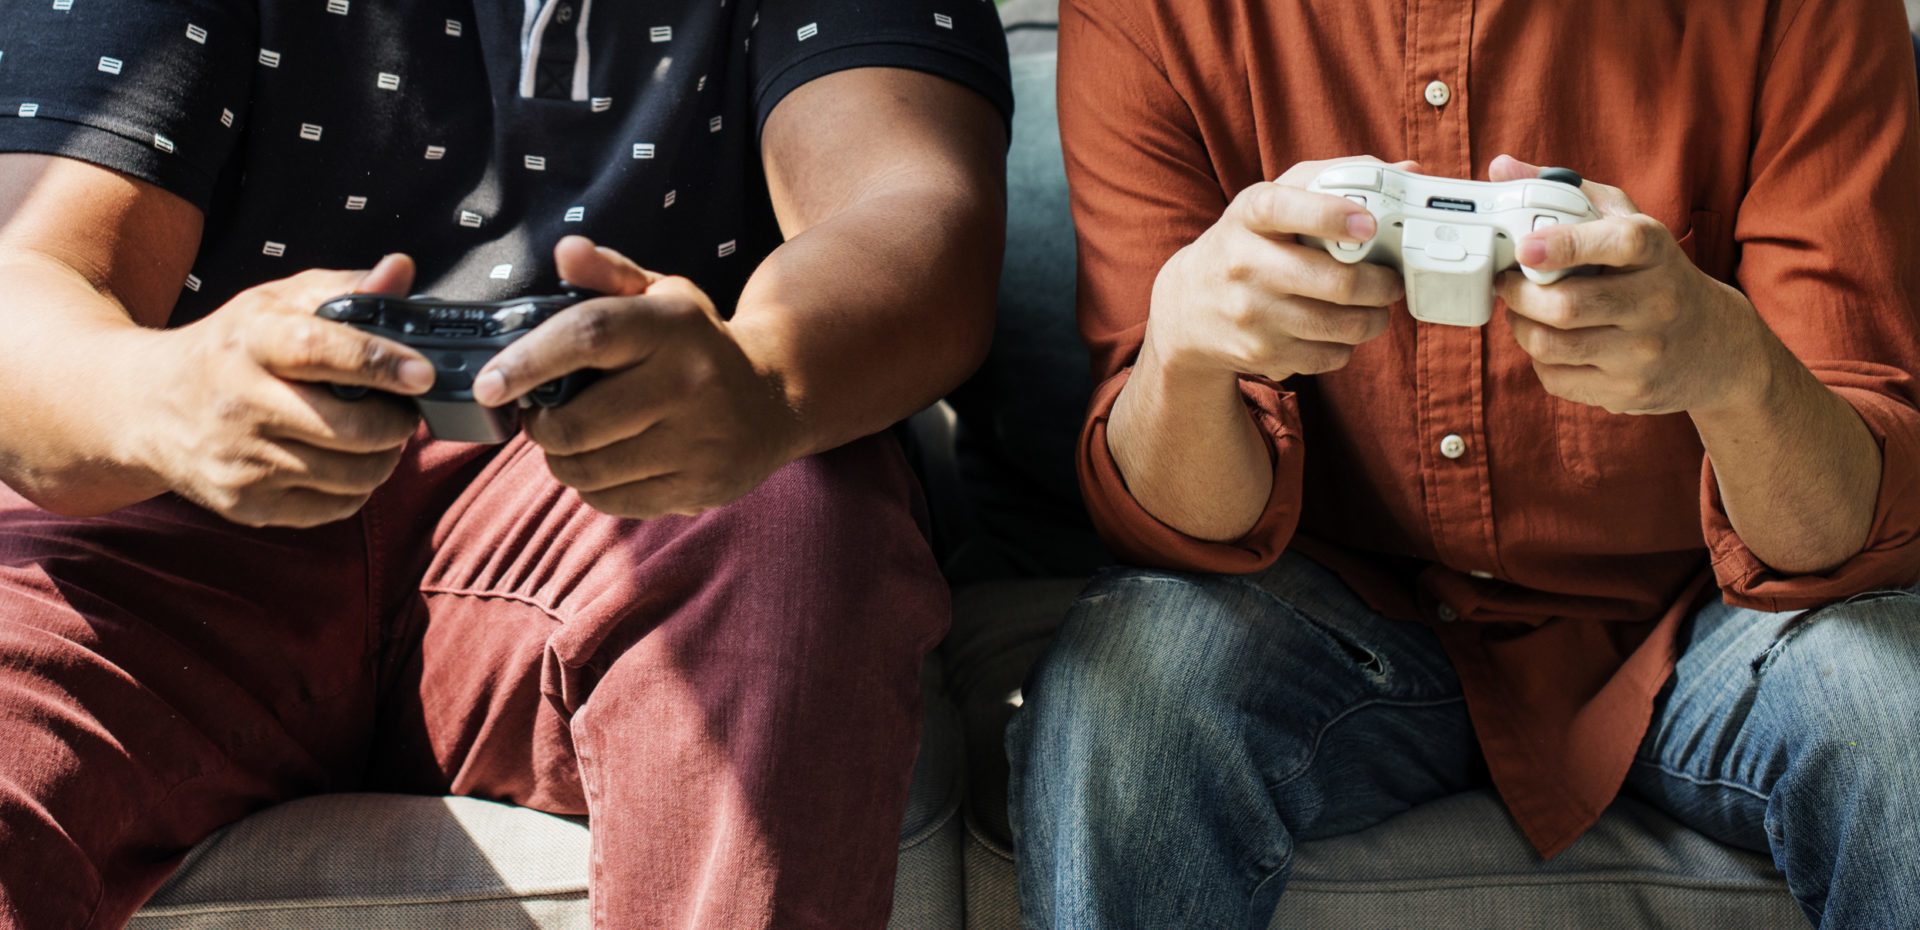 ADHD in teens video games